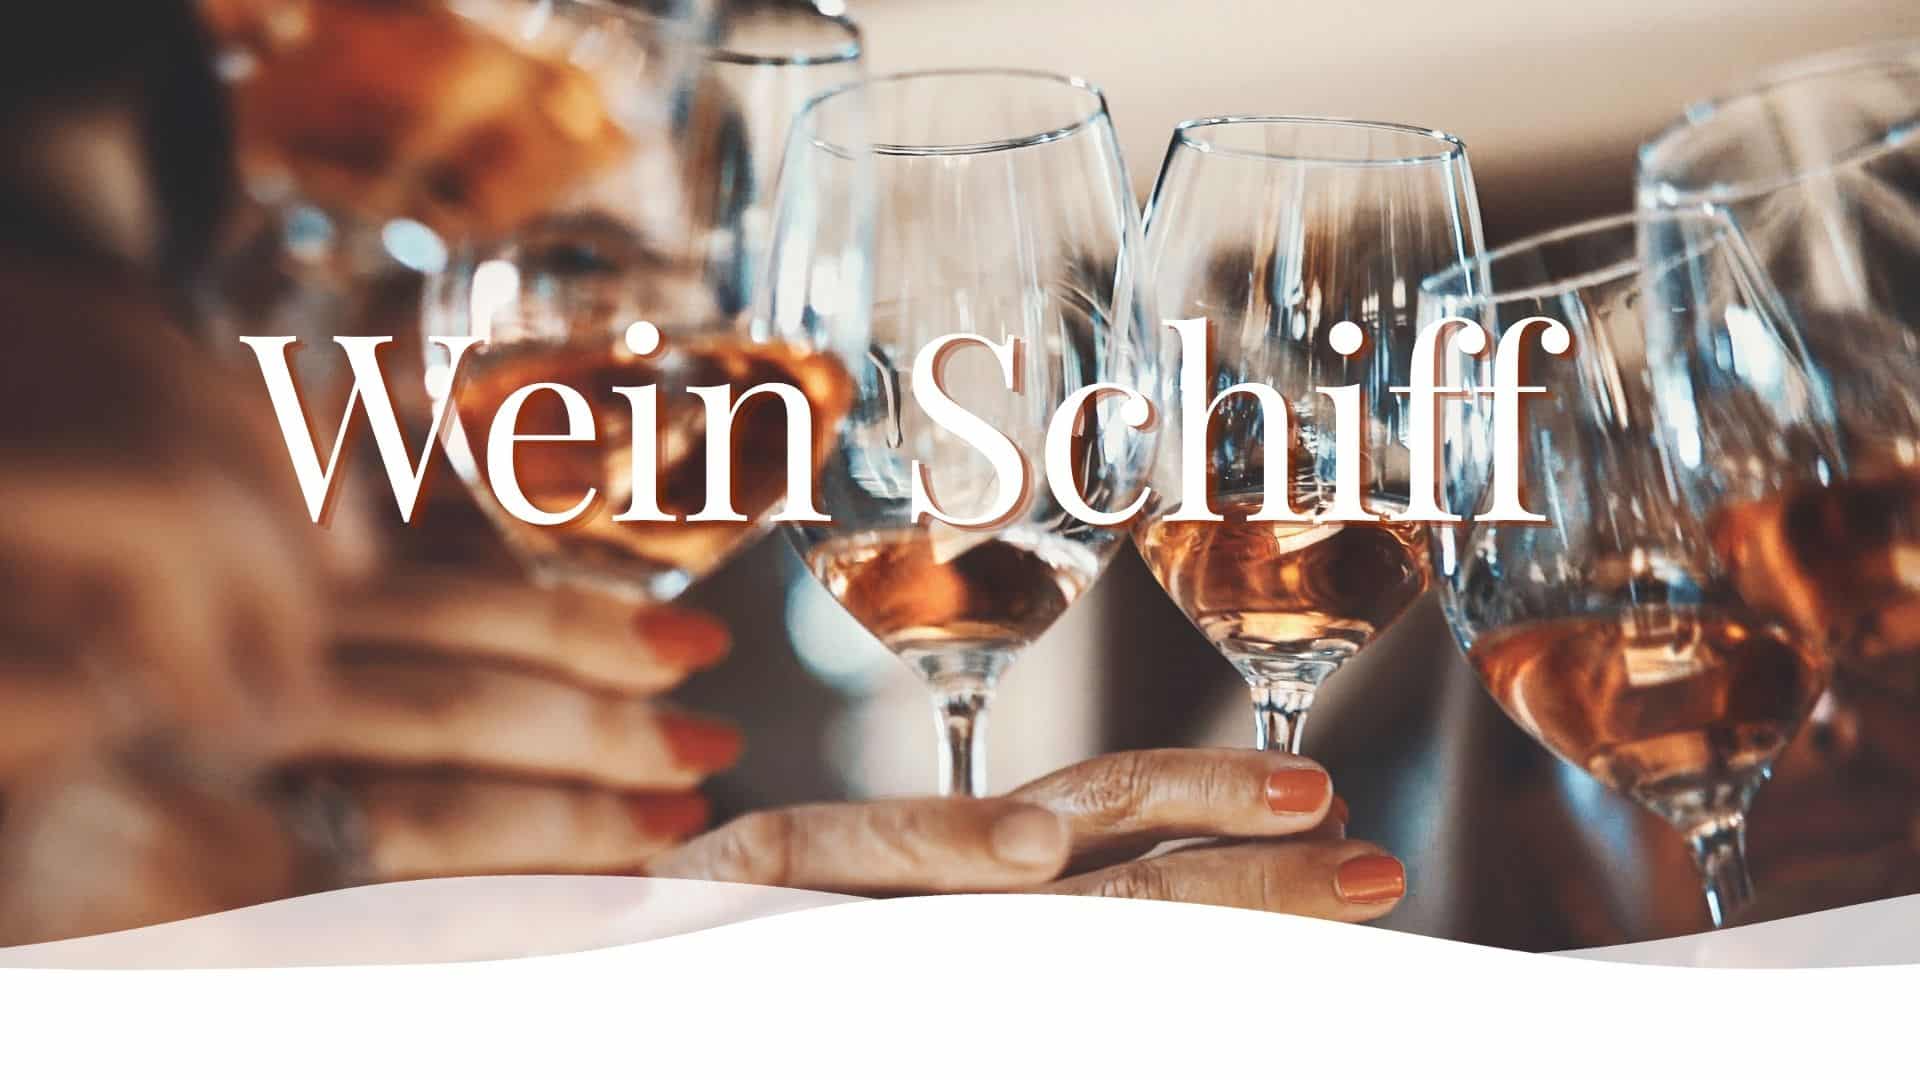 Wein Schiff • Weisse Flotte Heidelberg